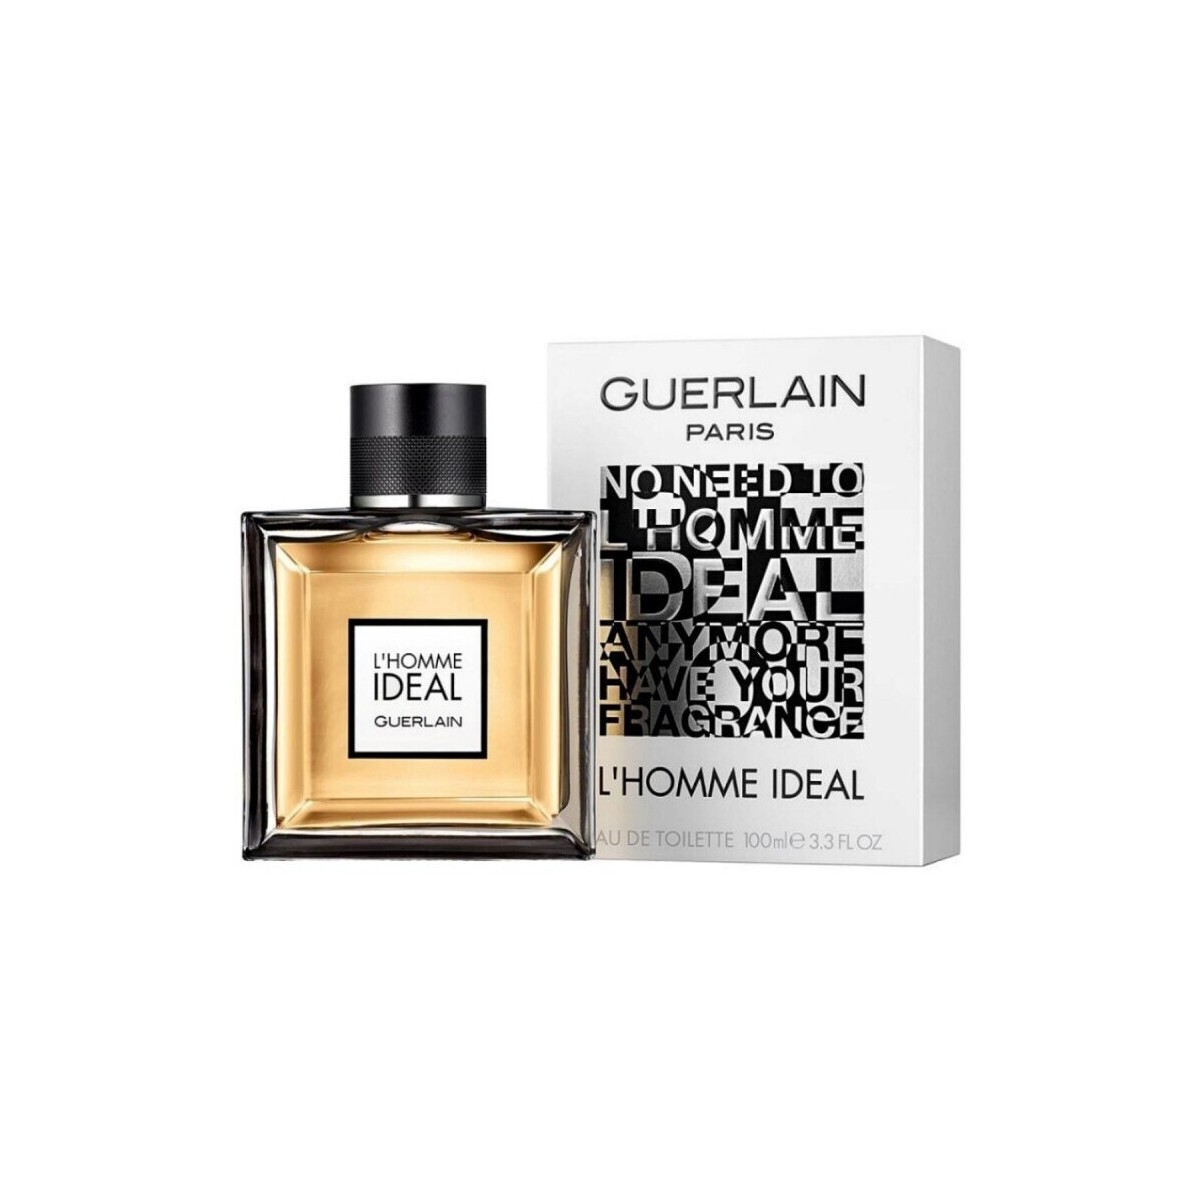 Guerlain L Homme Ideal - cologne - 100ml - spray L Homme Ideal - eau de toilette - 100ml - vaporisateur Vr3gkaUe